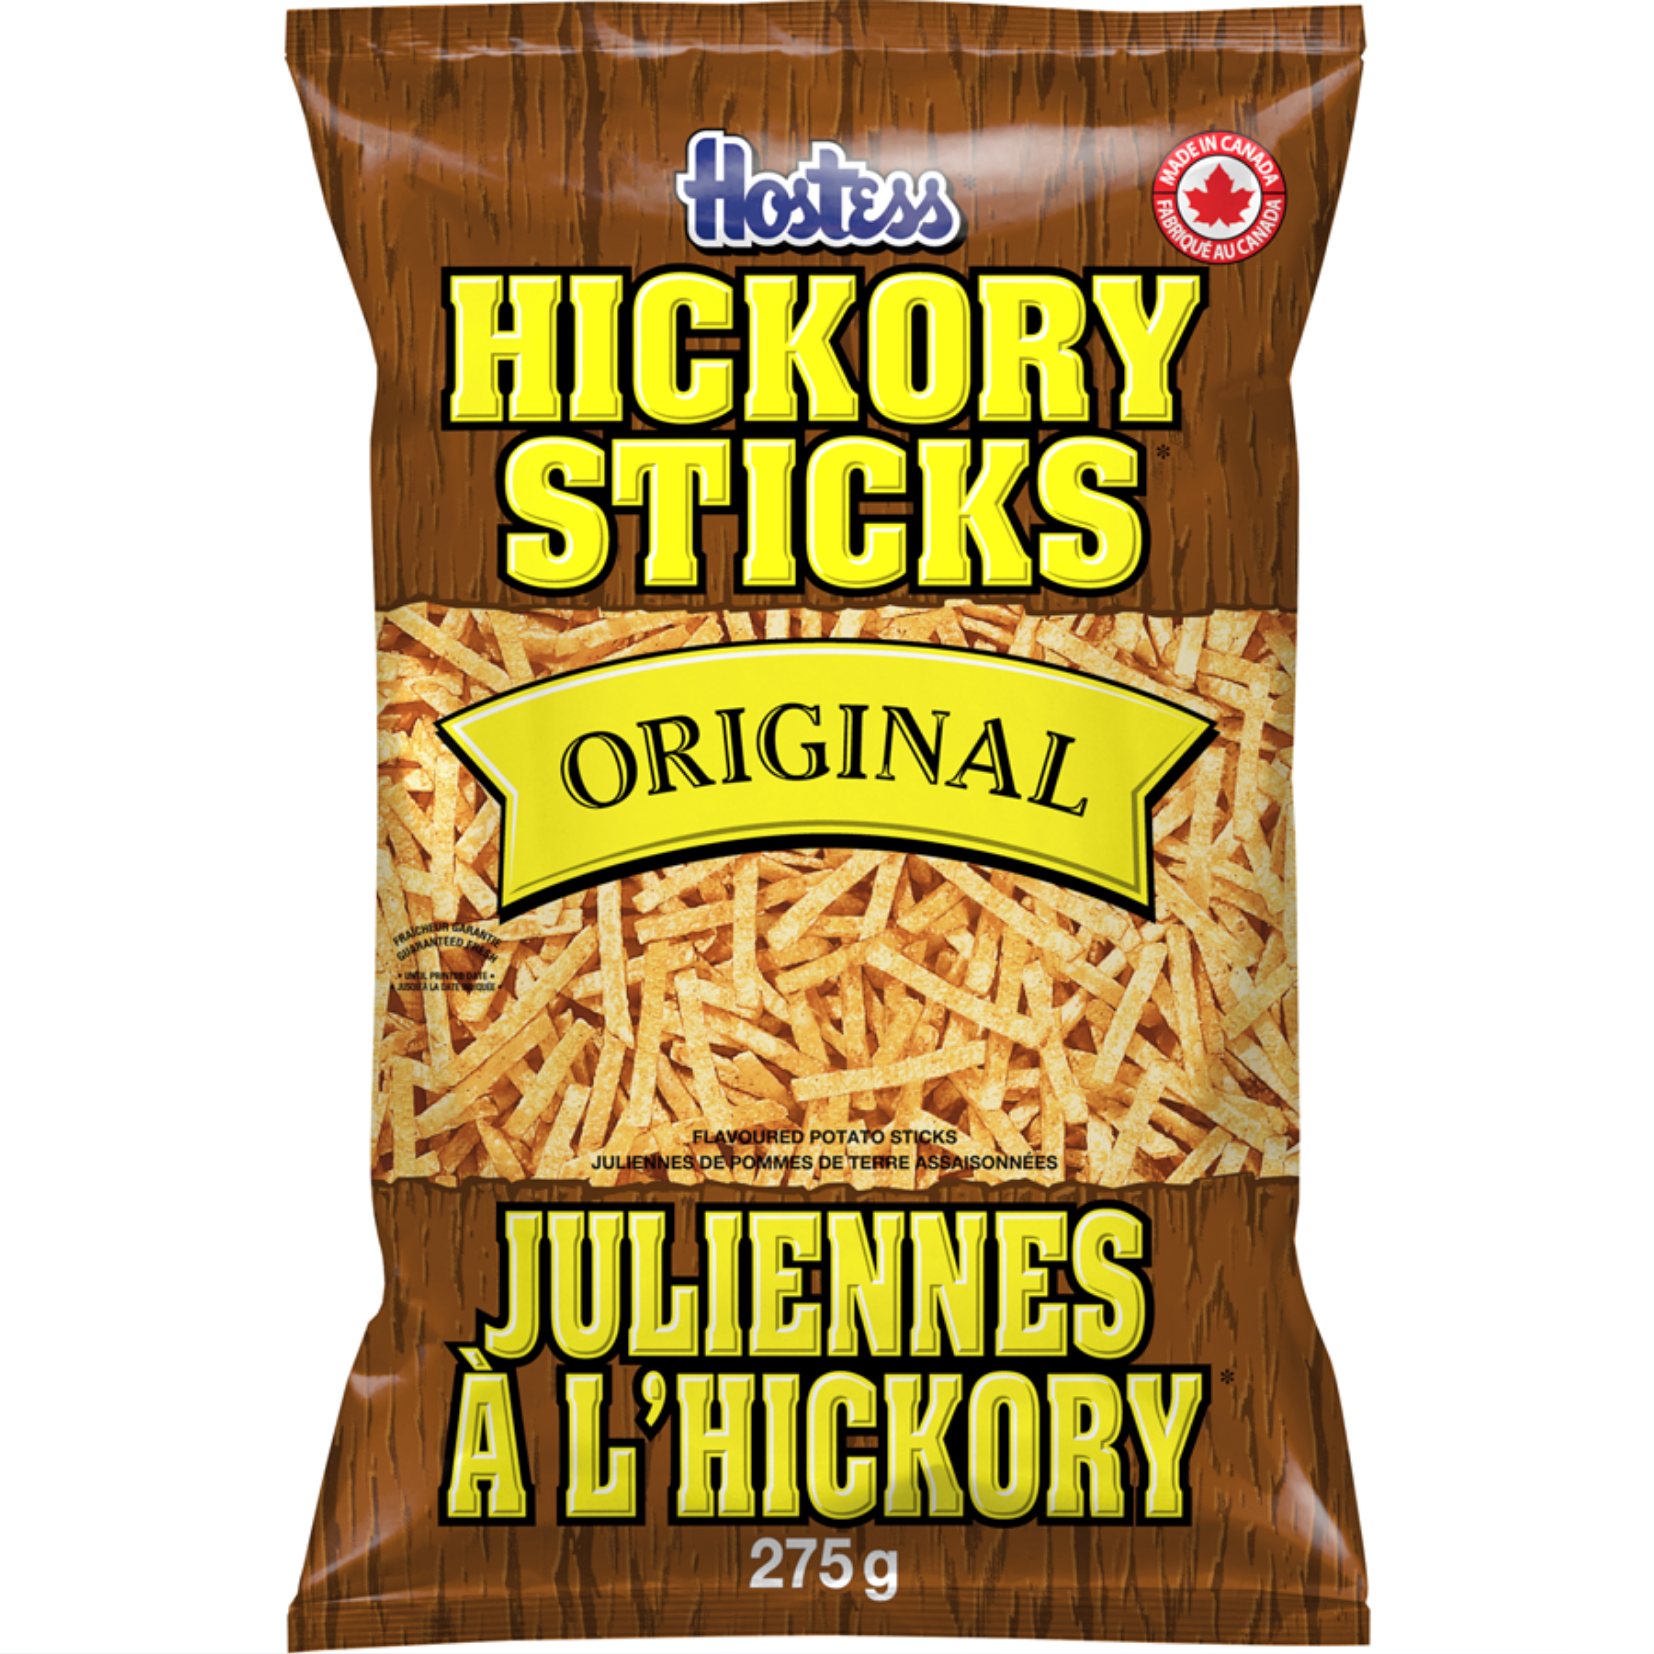 Hostess Original Hickory Sticks 275g